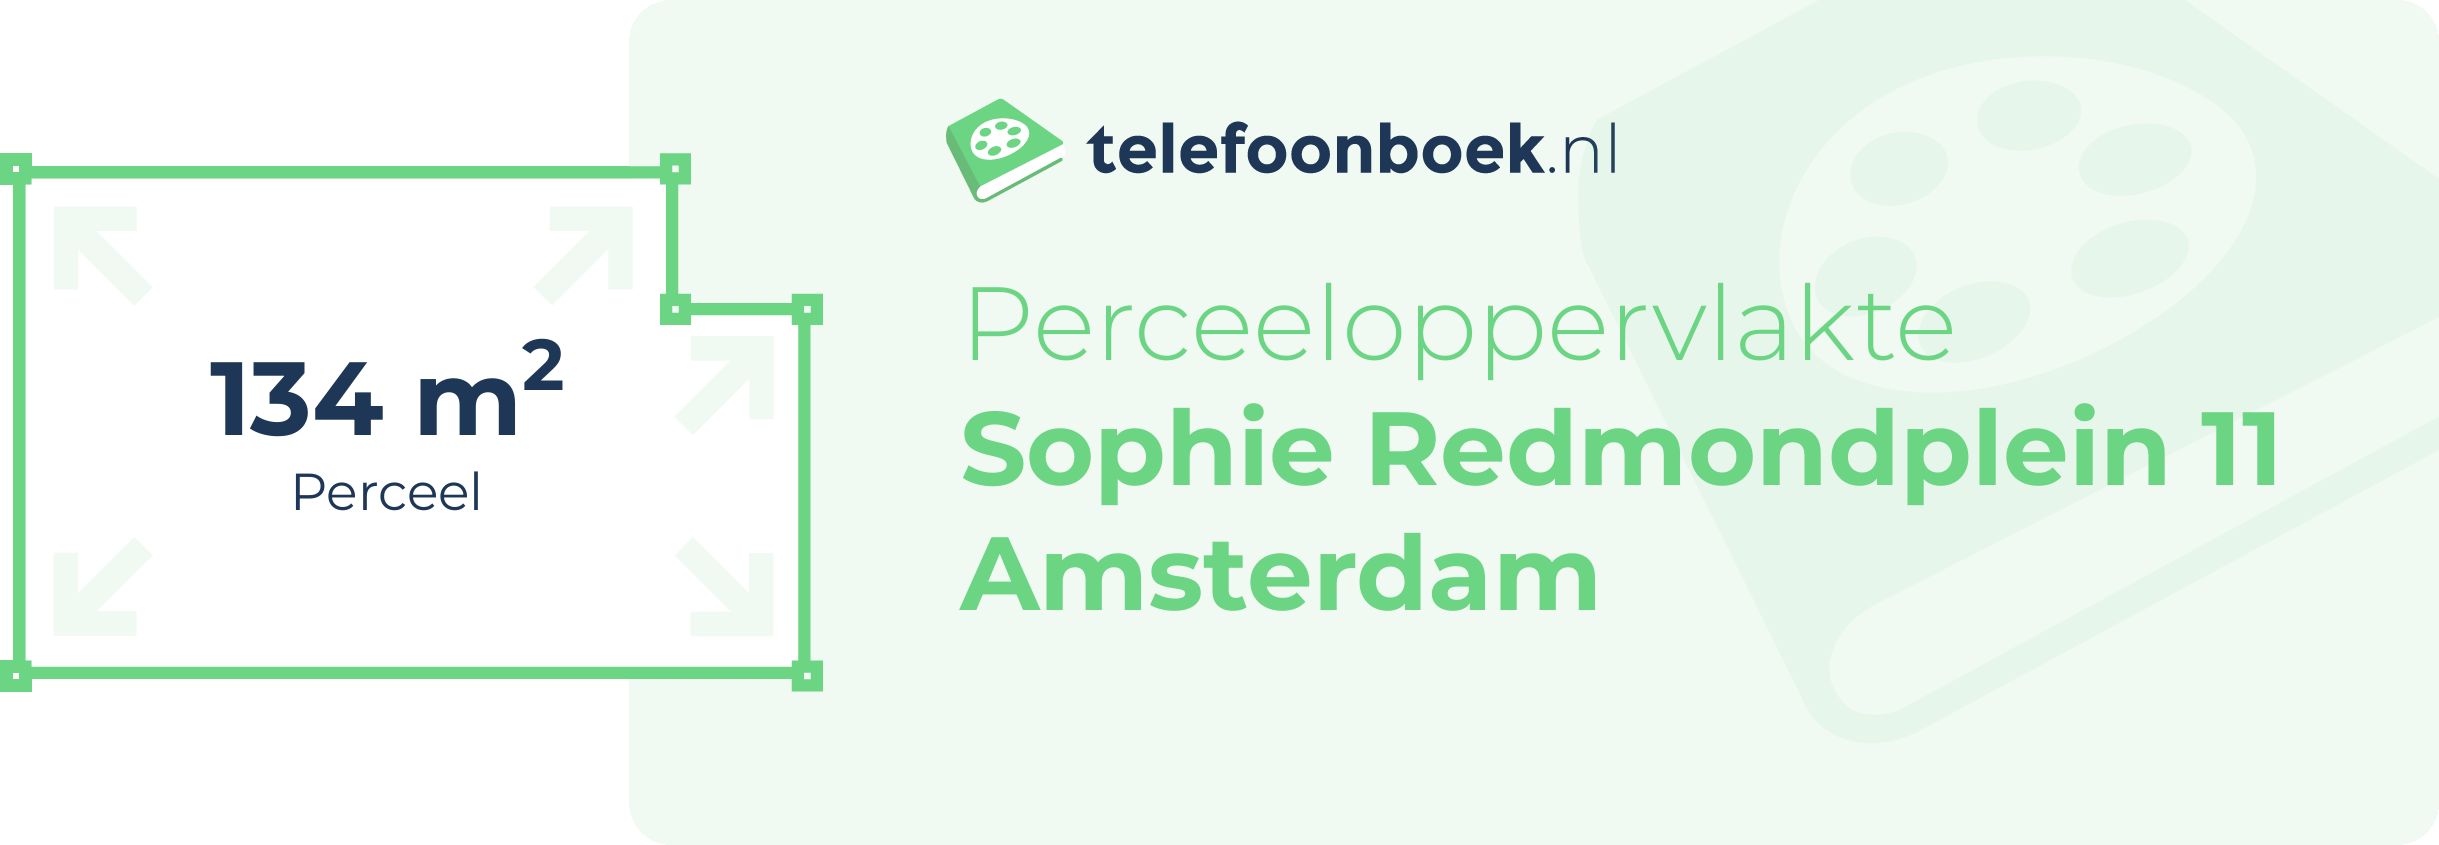 Perceeloppervlakte Sophie Redmondplein 11 Amsterdam